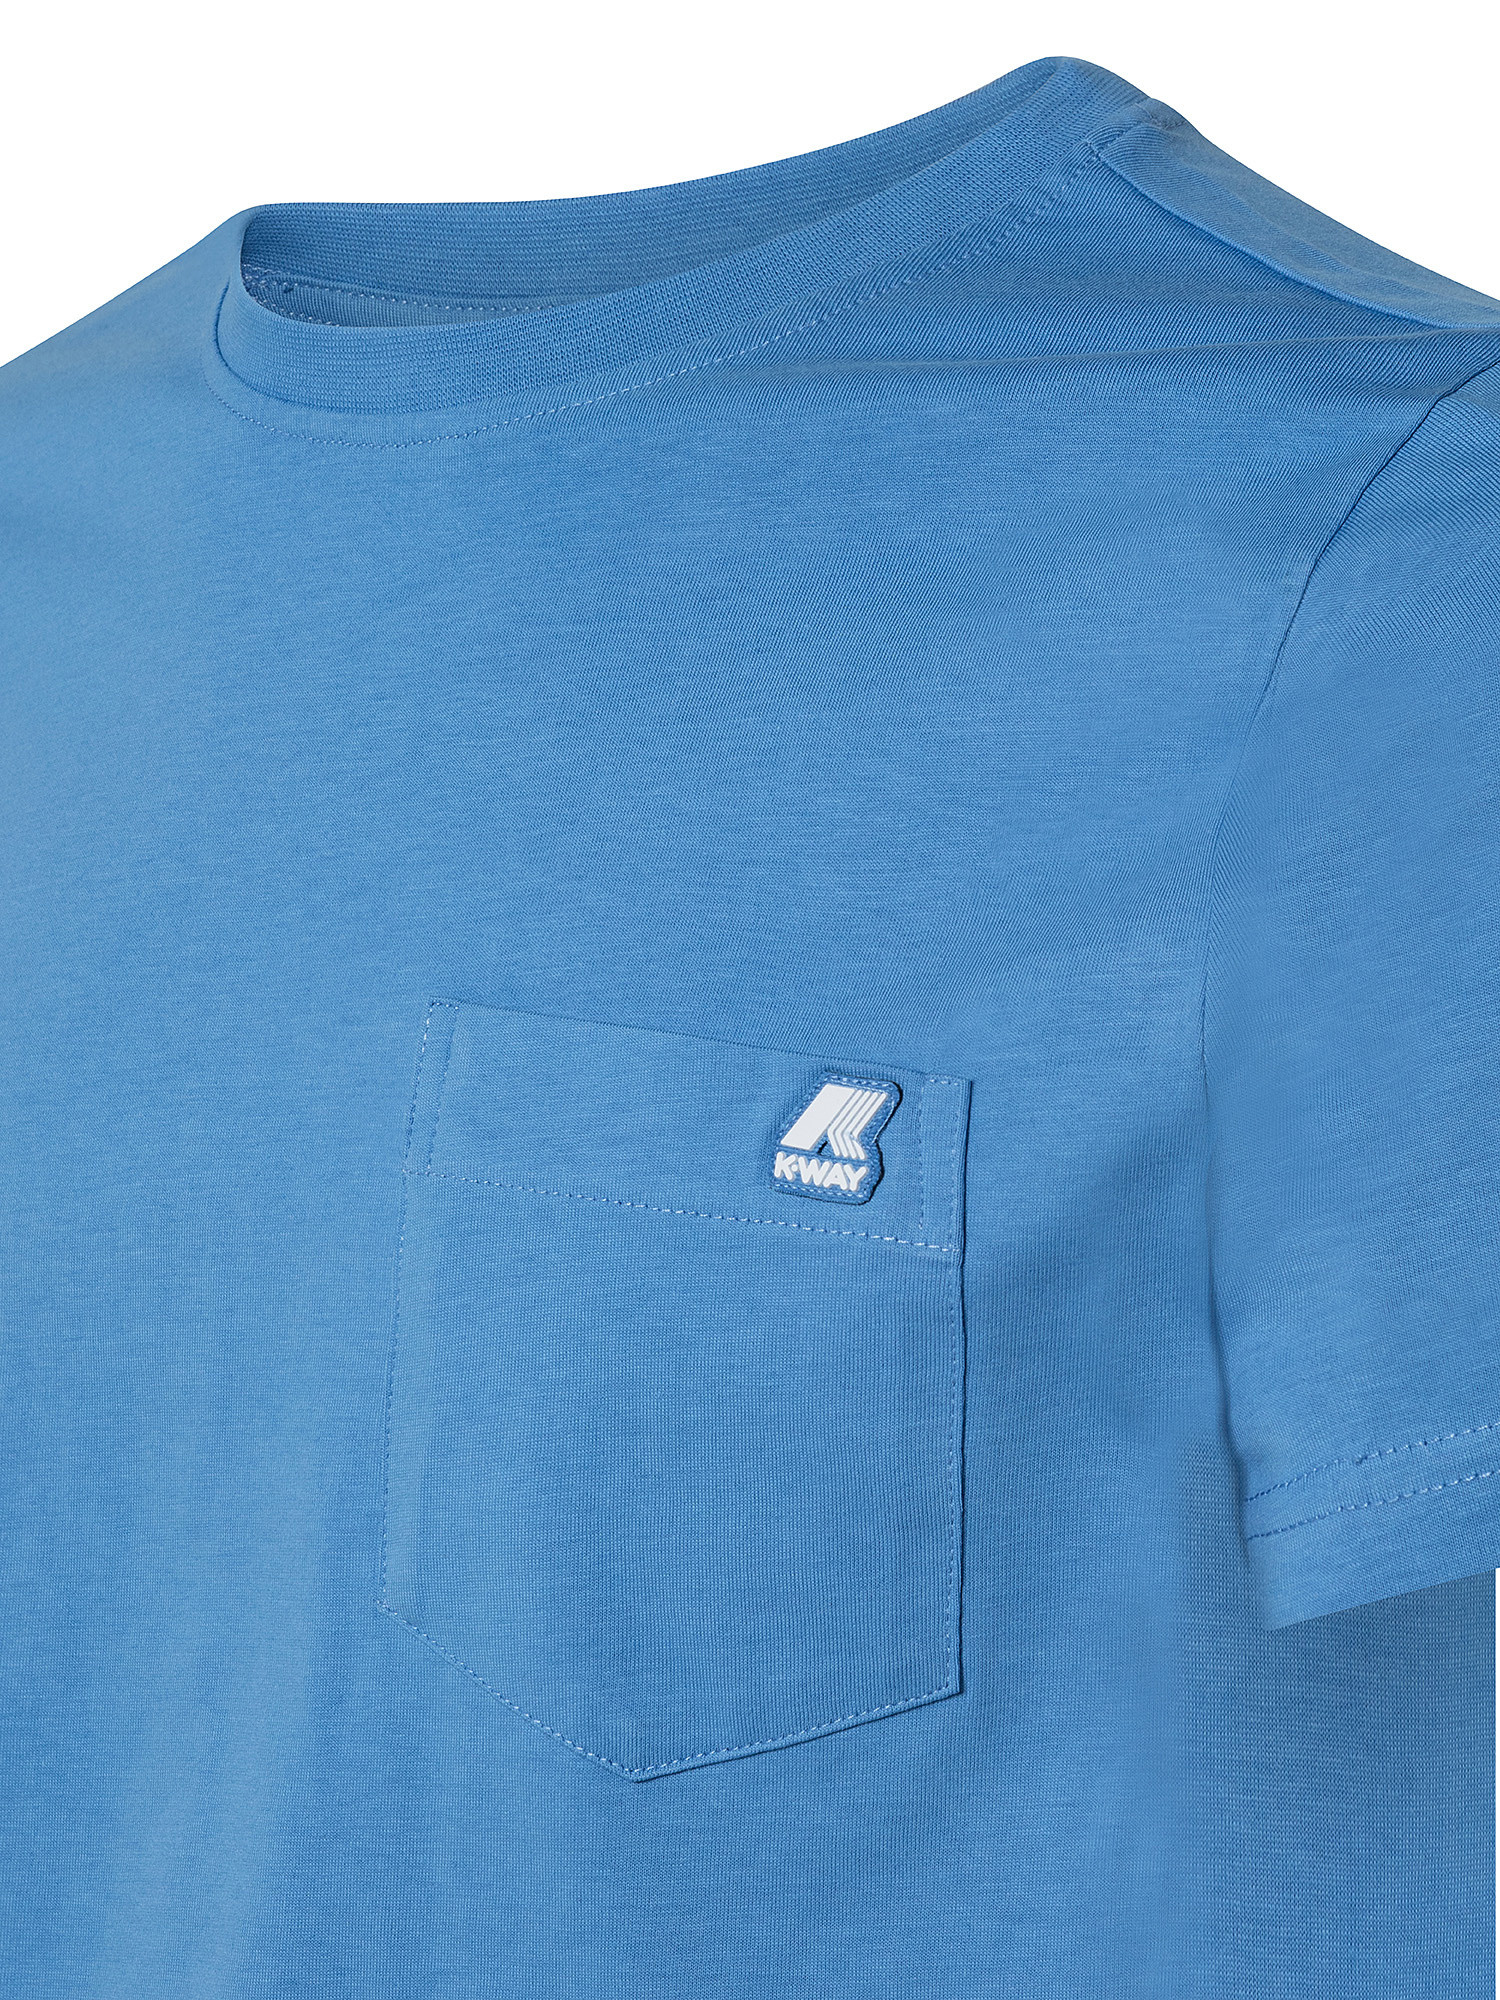 Slim fit T-shirt, Light Blue, large image number 2